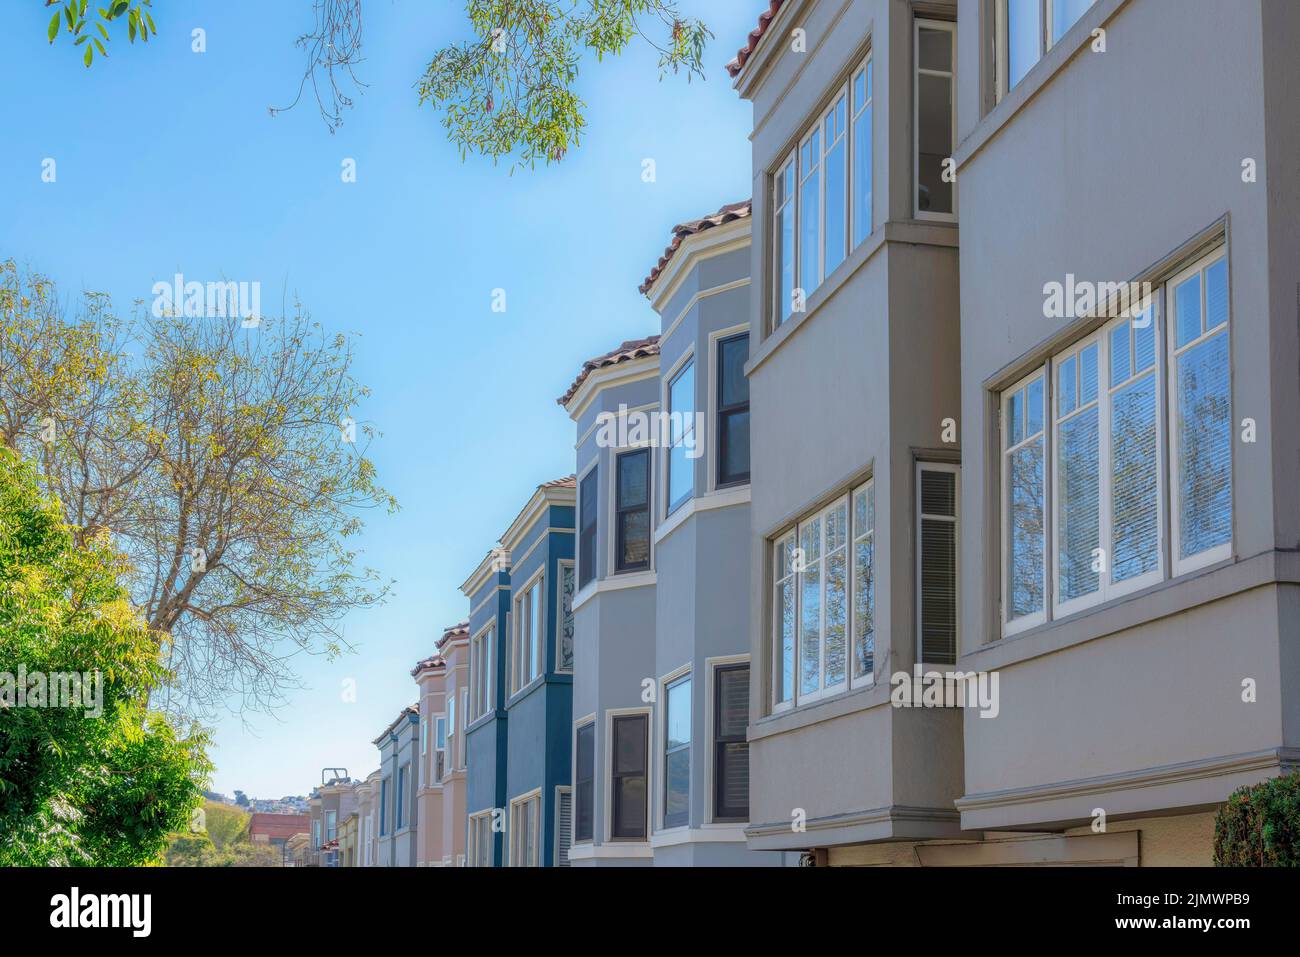 Rangée de maisons de ville sur la droite avec baies vitrées contre le ciel clair à San Francisco, Californie. Il y a des arbres sur la gauche de l'autre côté des maisons en rangée Banque D'Images